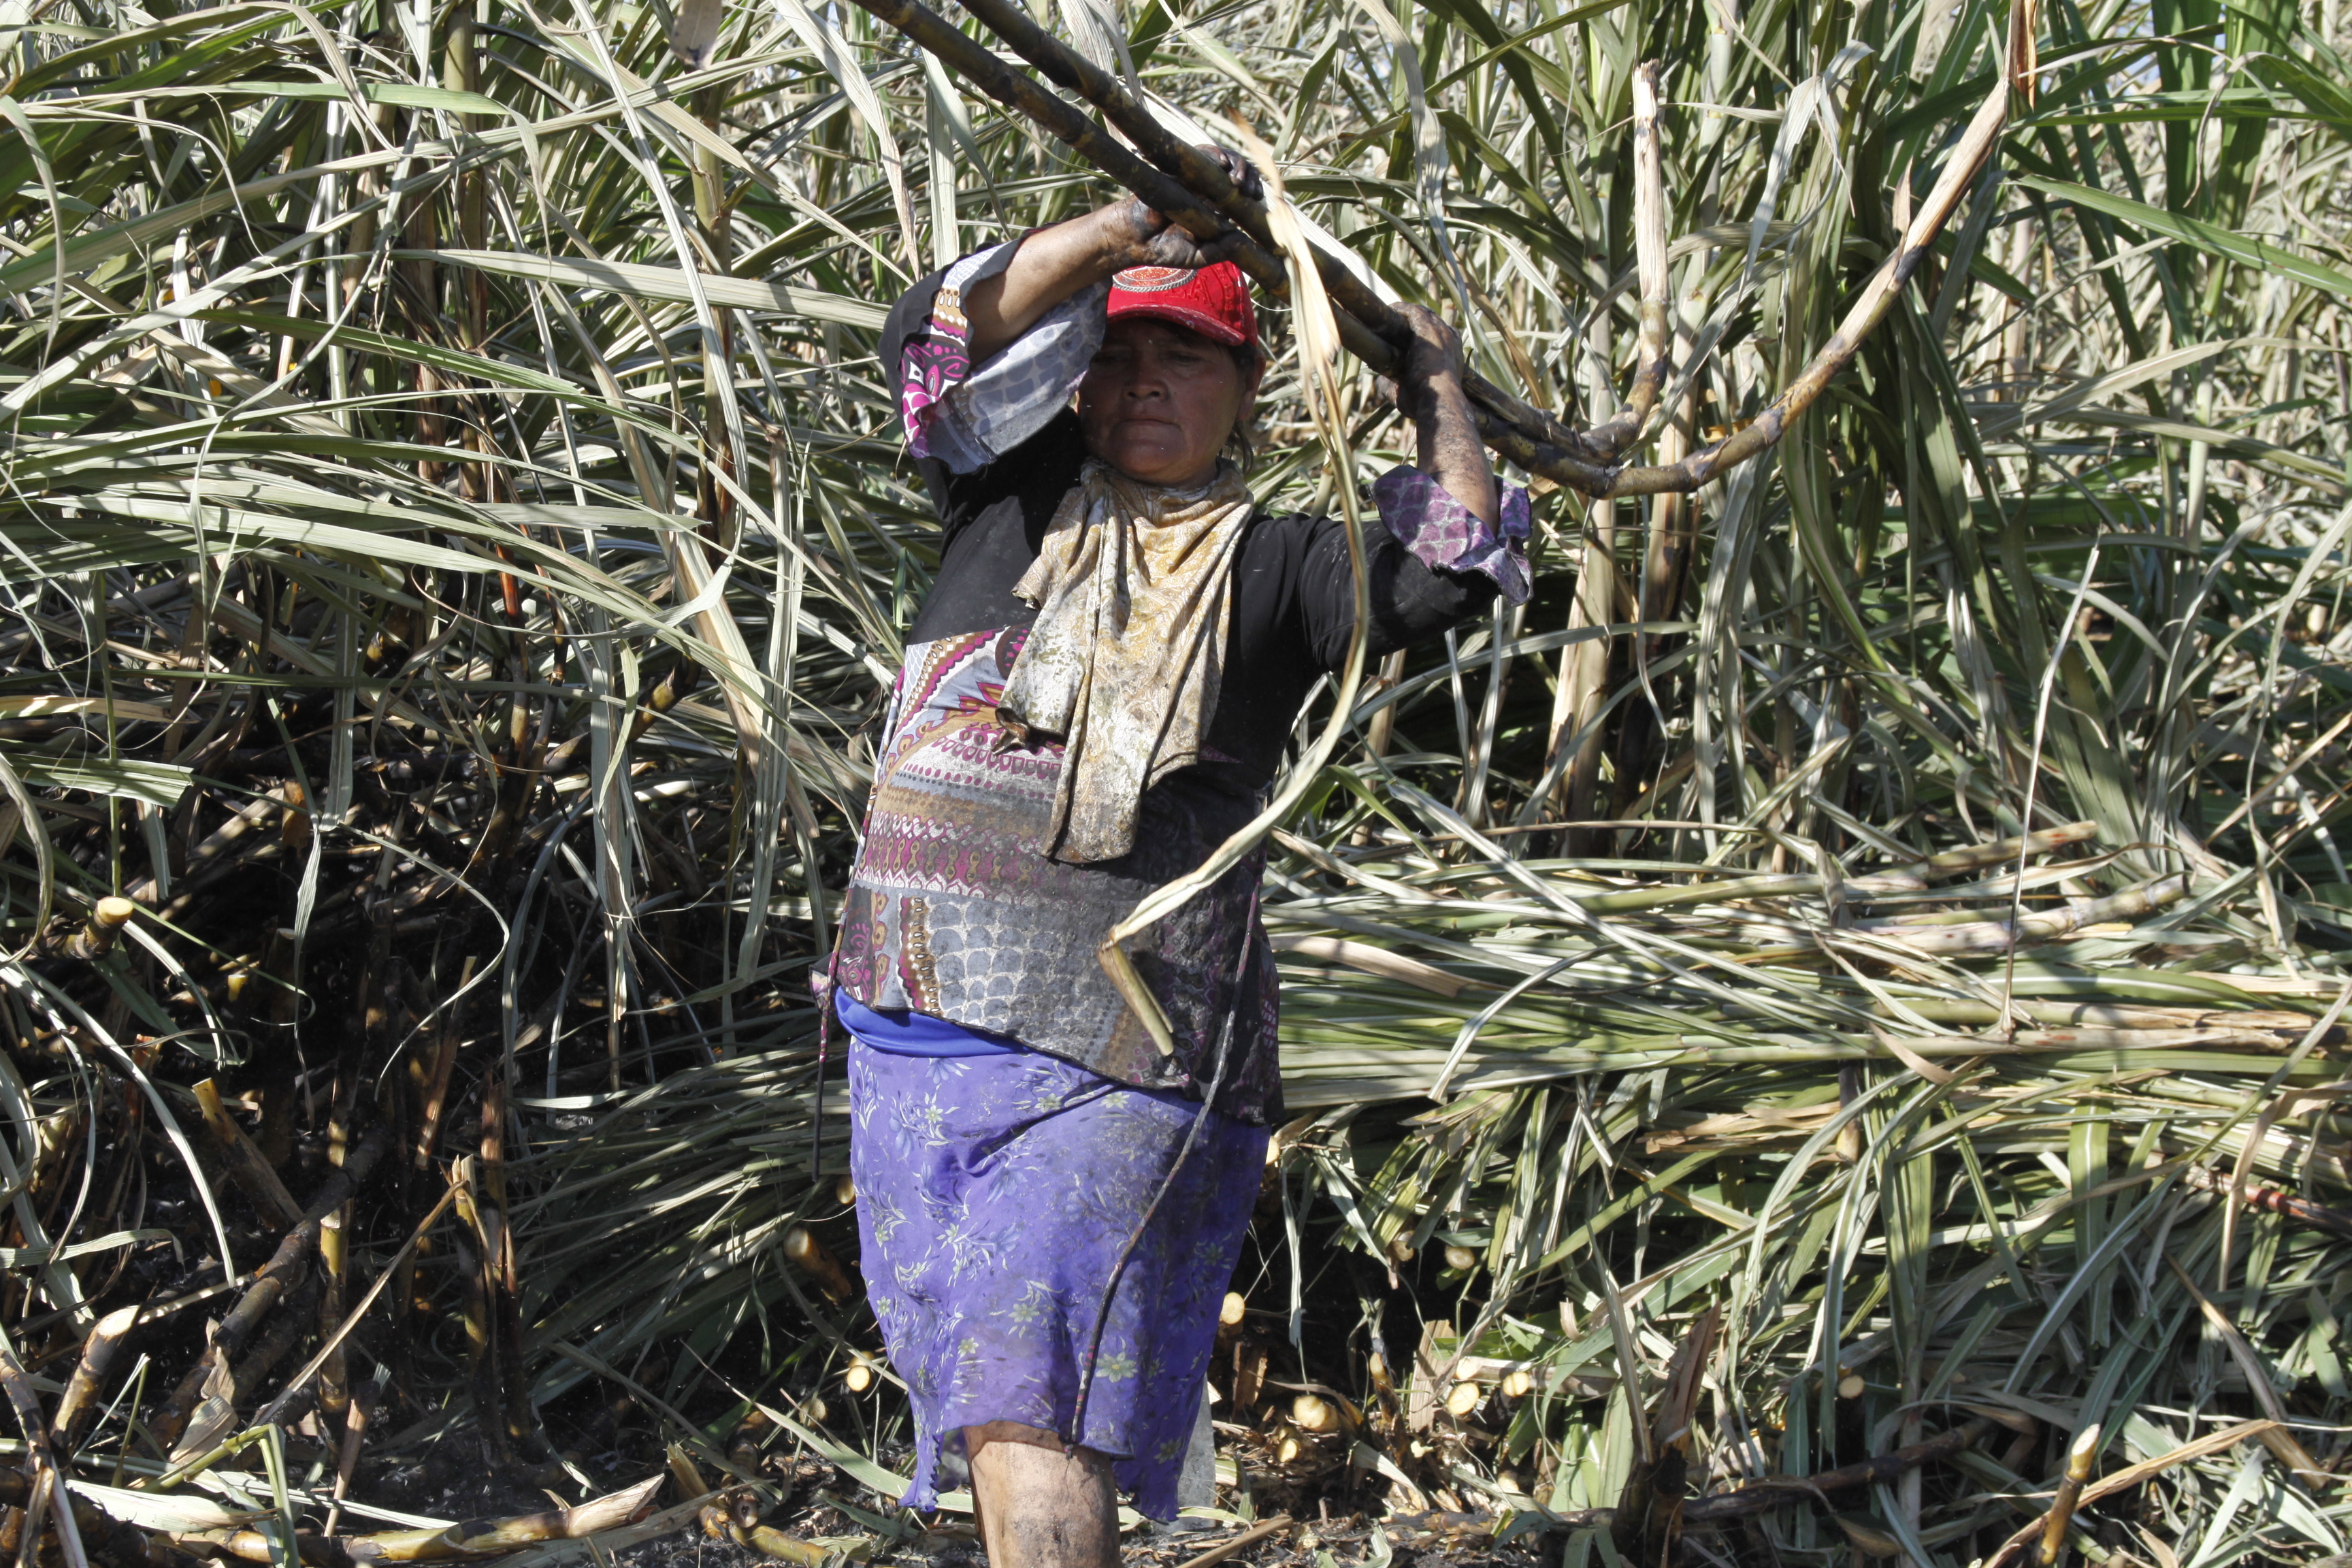 Mujeres mexicanas y guatemaltecas en trabajos sucios, difíciles y peligrosos